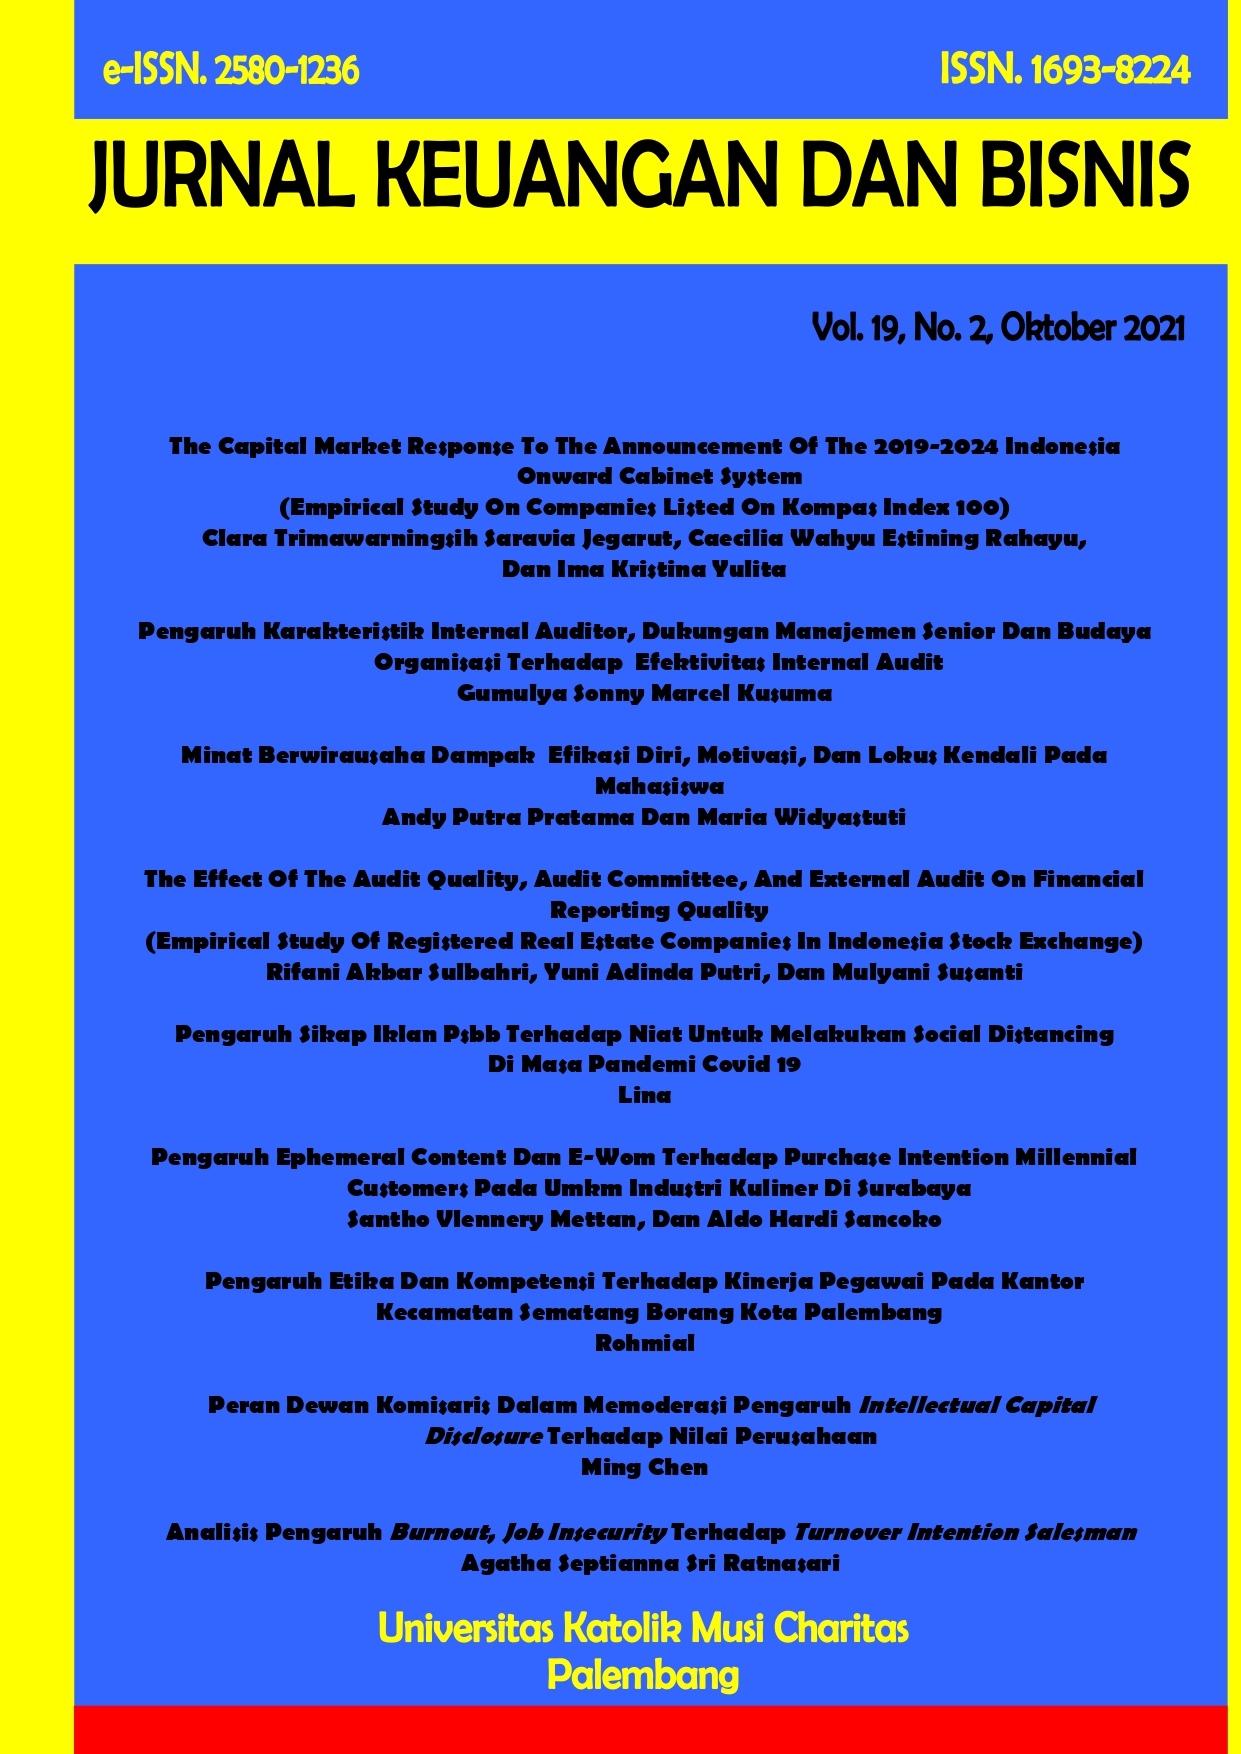 					View Vol. 19 No. 2 (2021): Jurnal Keuangan dan Bisnis Volume 19 No. 2, Edisi Oktober 2021
				